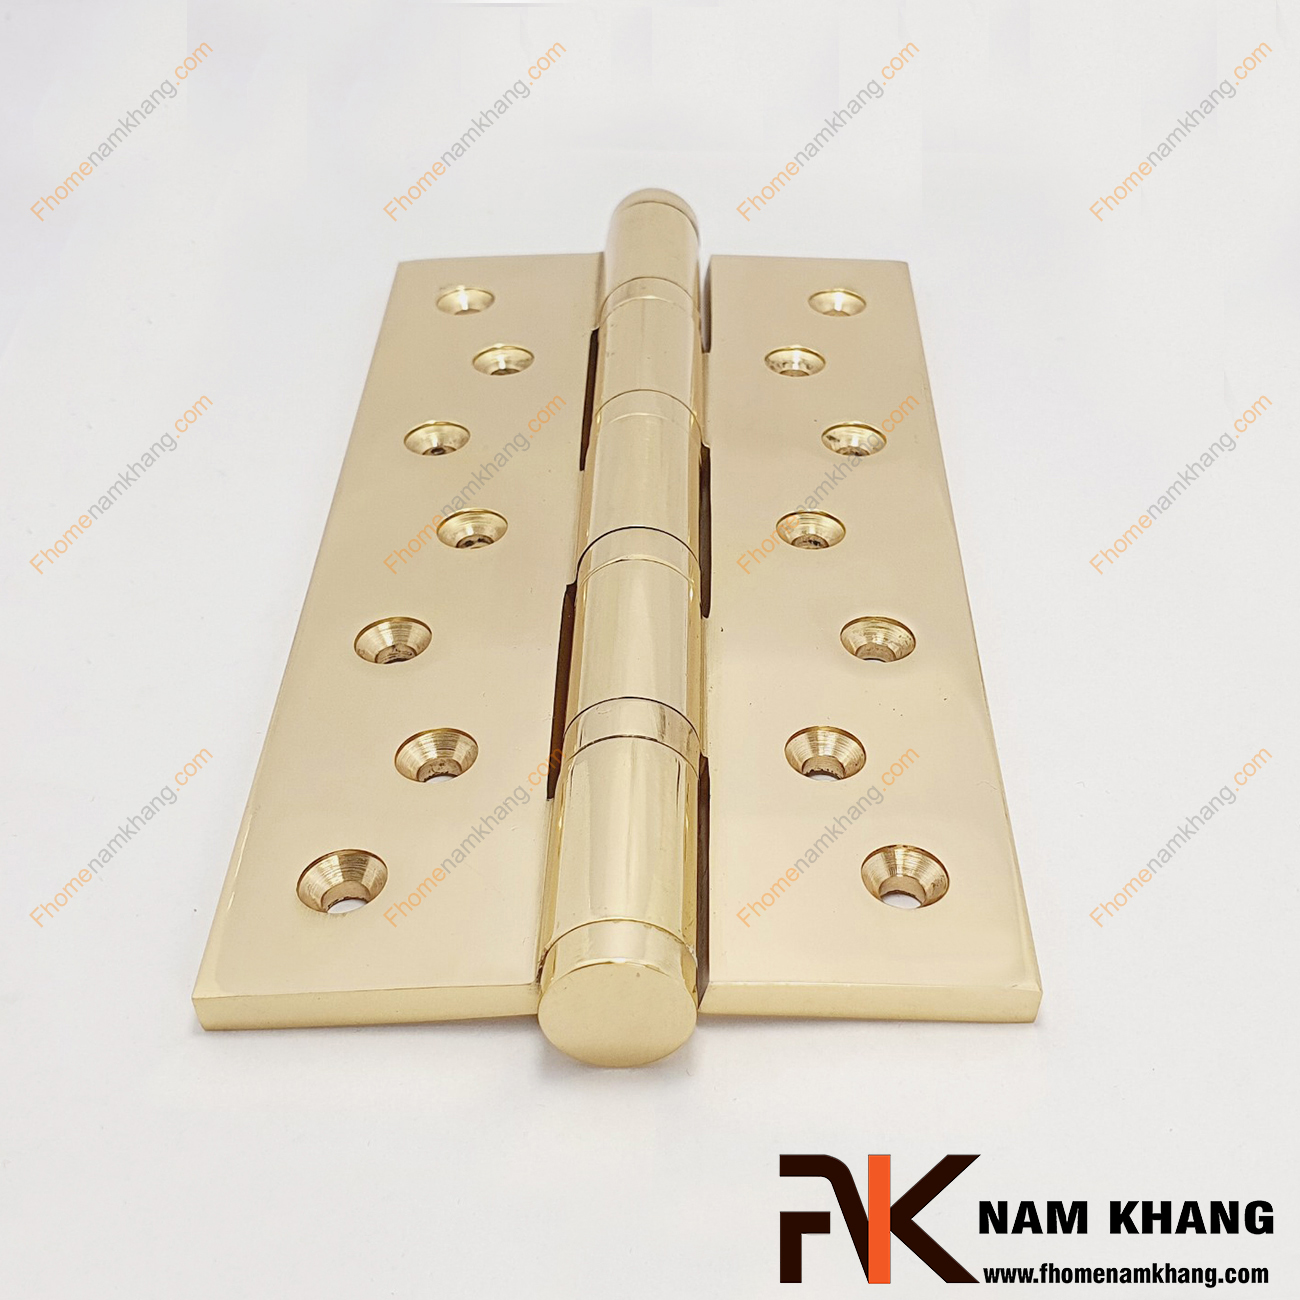 Bản lề cửa bằng đồng cao cấp màu đồng vàng NK308N-20DO là phụ kiện không thể thiếu của cửa, đóng vai trò nâng cao tuổi thọ cho các cánh cửa.